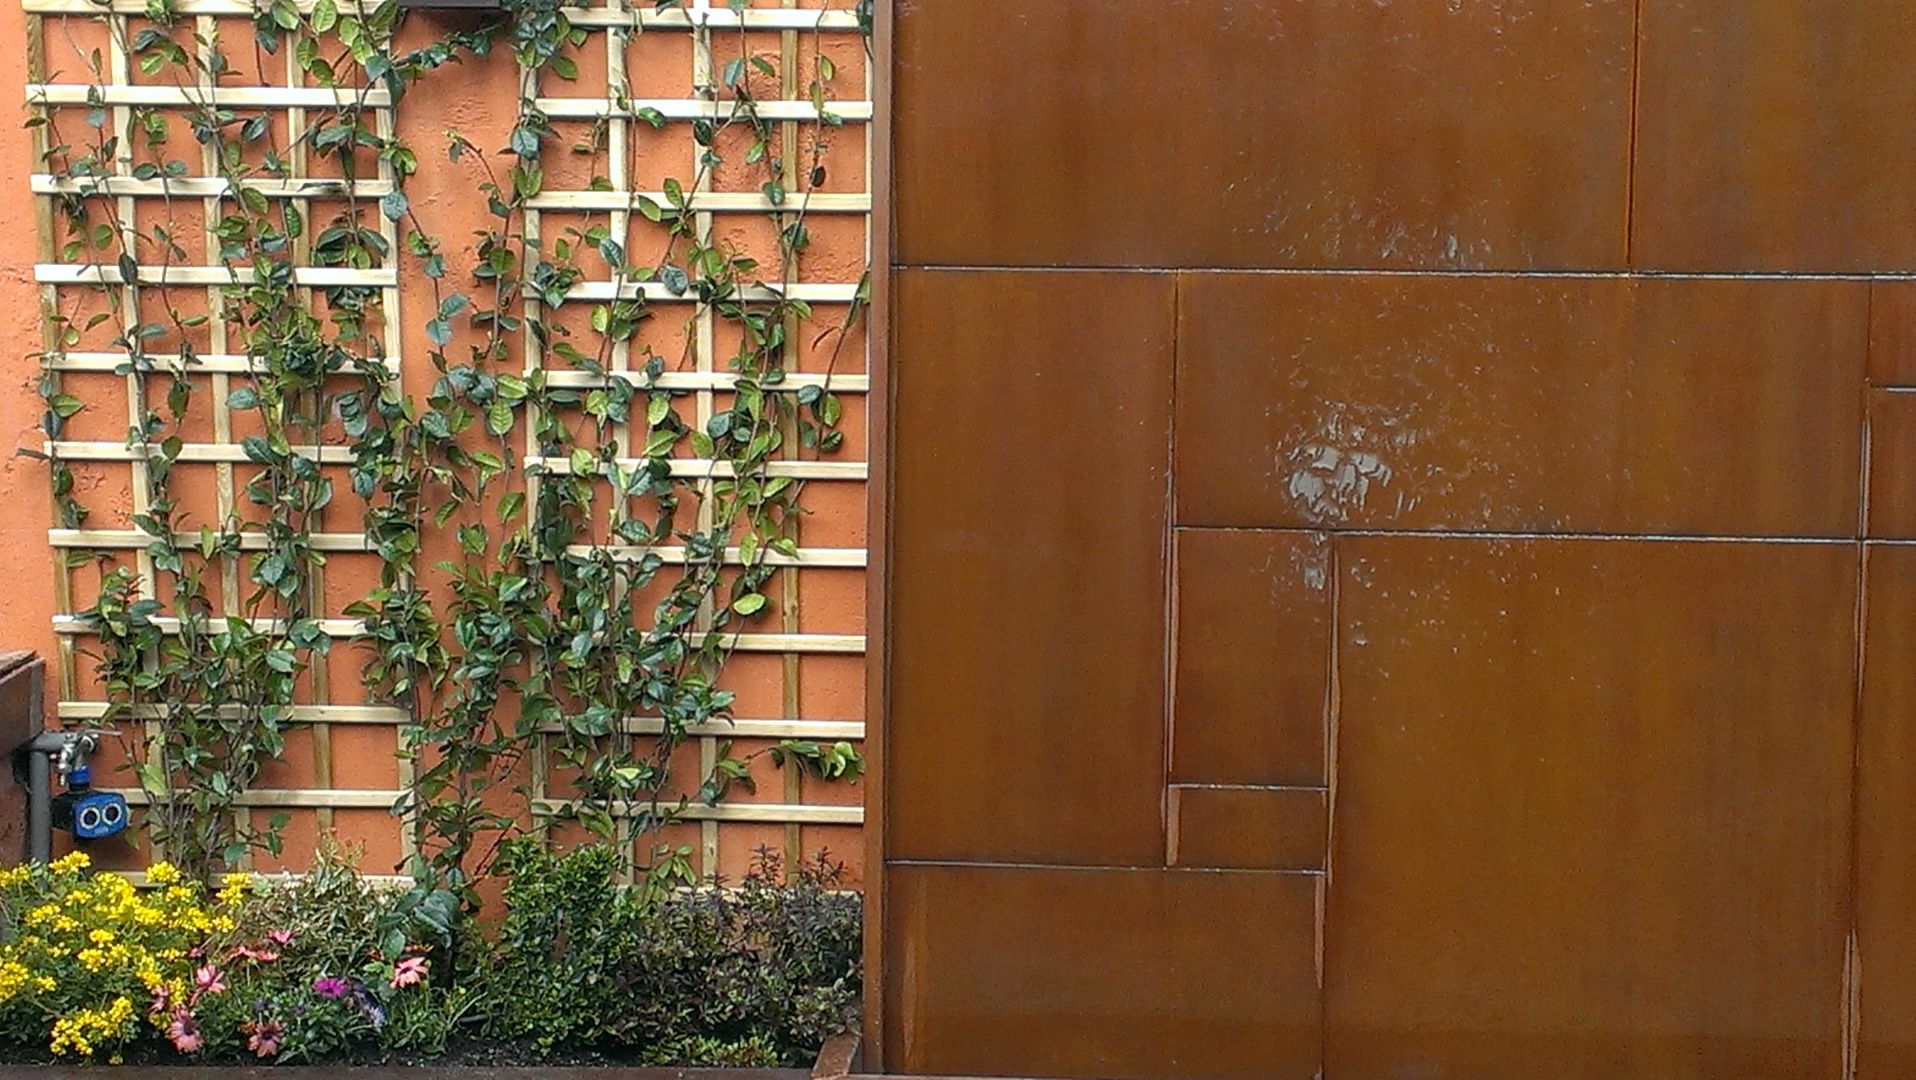 Un muro decorado con fuente de acero corten, El creador de paisajes El creador de paisajes モダンな庭 アクセサリー＆デコレーション